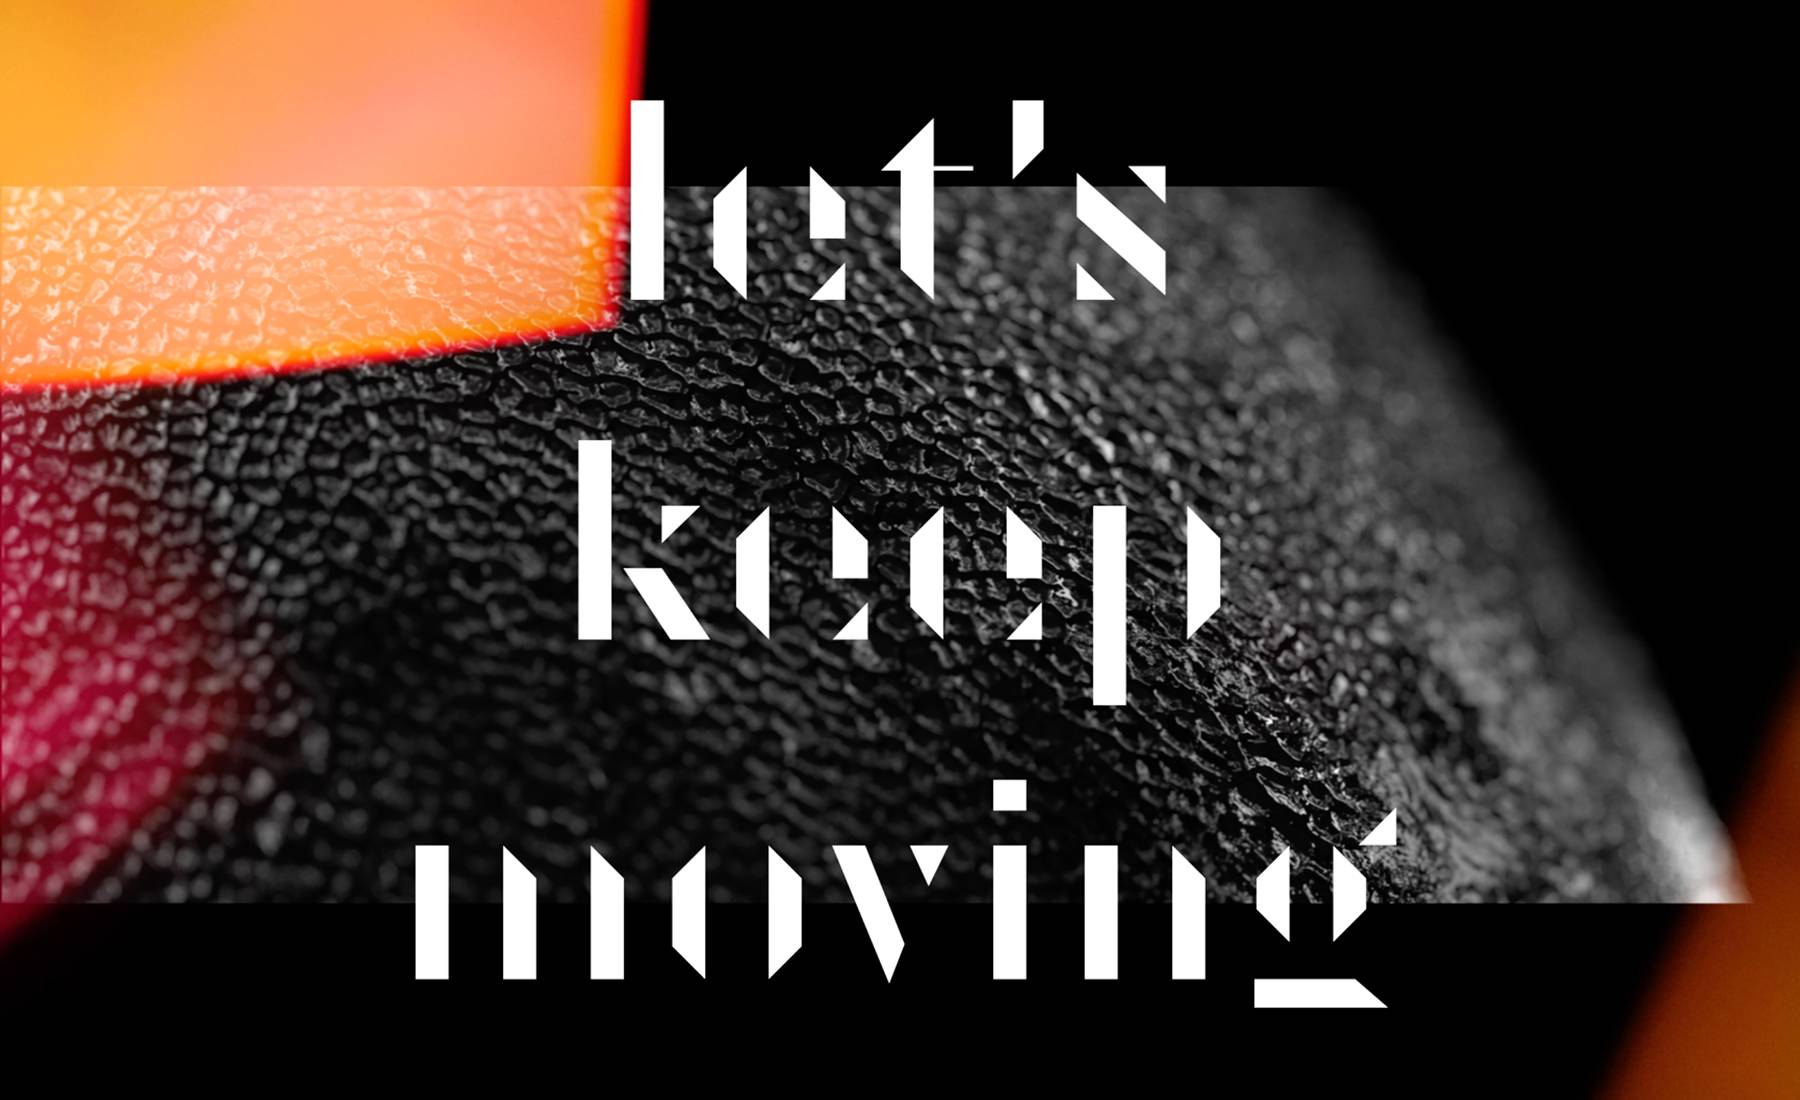 Keep moving forward. Keep on moving kastuvas feat. Emie. Kastuvas emie keep on moving